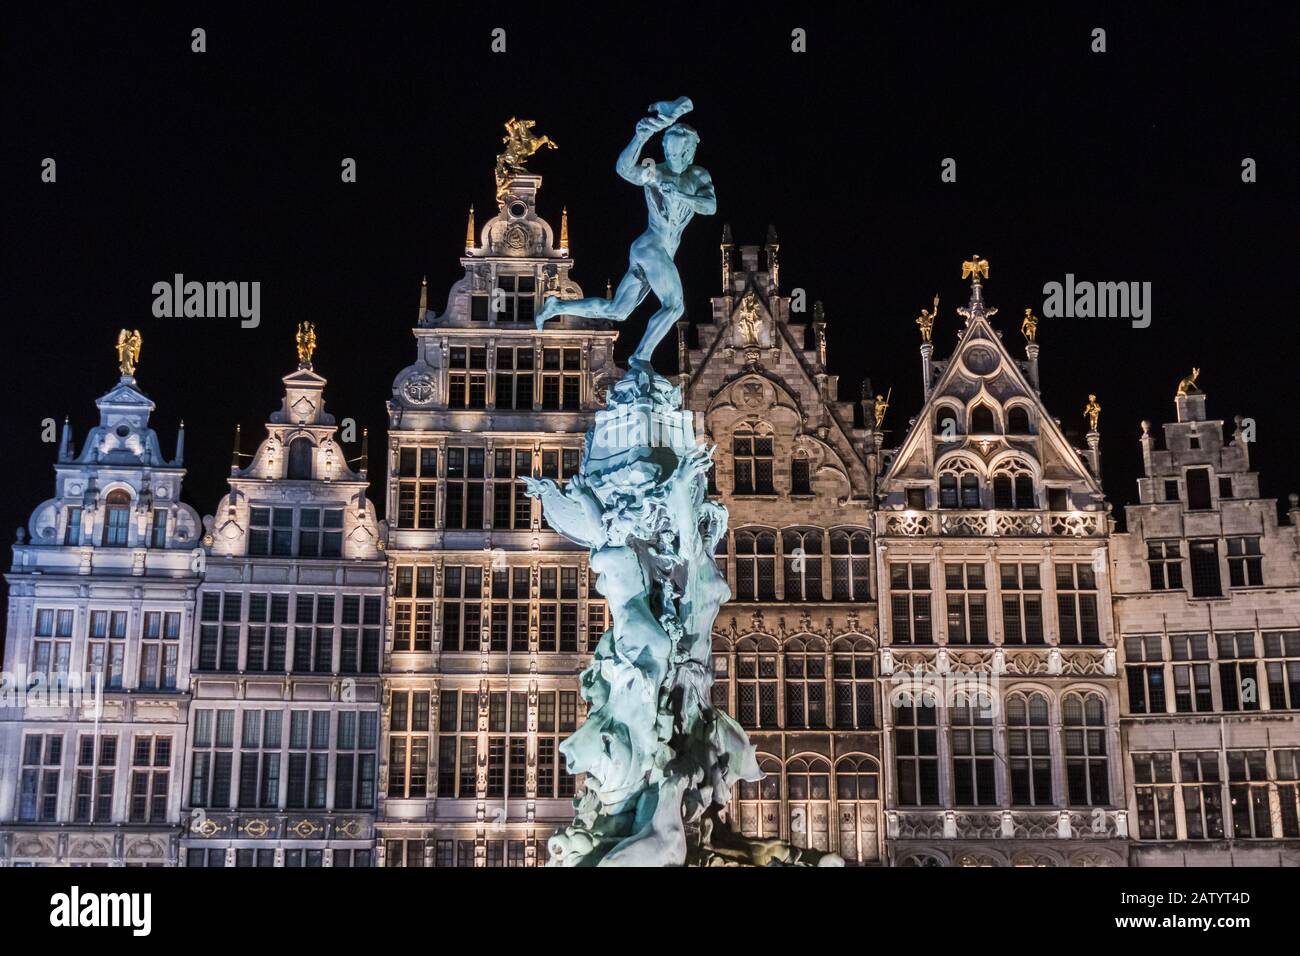 Nächtlicher Blick auf den Brabo-Brunnen und die barocken Guldenhallen am historischen Stadtplatz Grote Markt im alten Stadtviertel von Antwerpen, Flanderns, Belgien Stockfoto